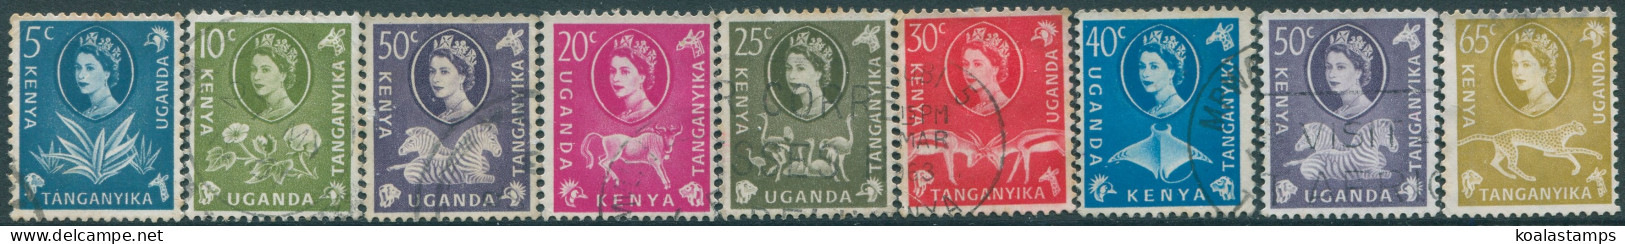 Kenya Uganda And Tanganyika 1960 SG183-191 QEII Wildlife And Plants (9) FU (amd) - Kenya, Ouganda & Tanganyika